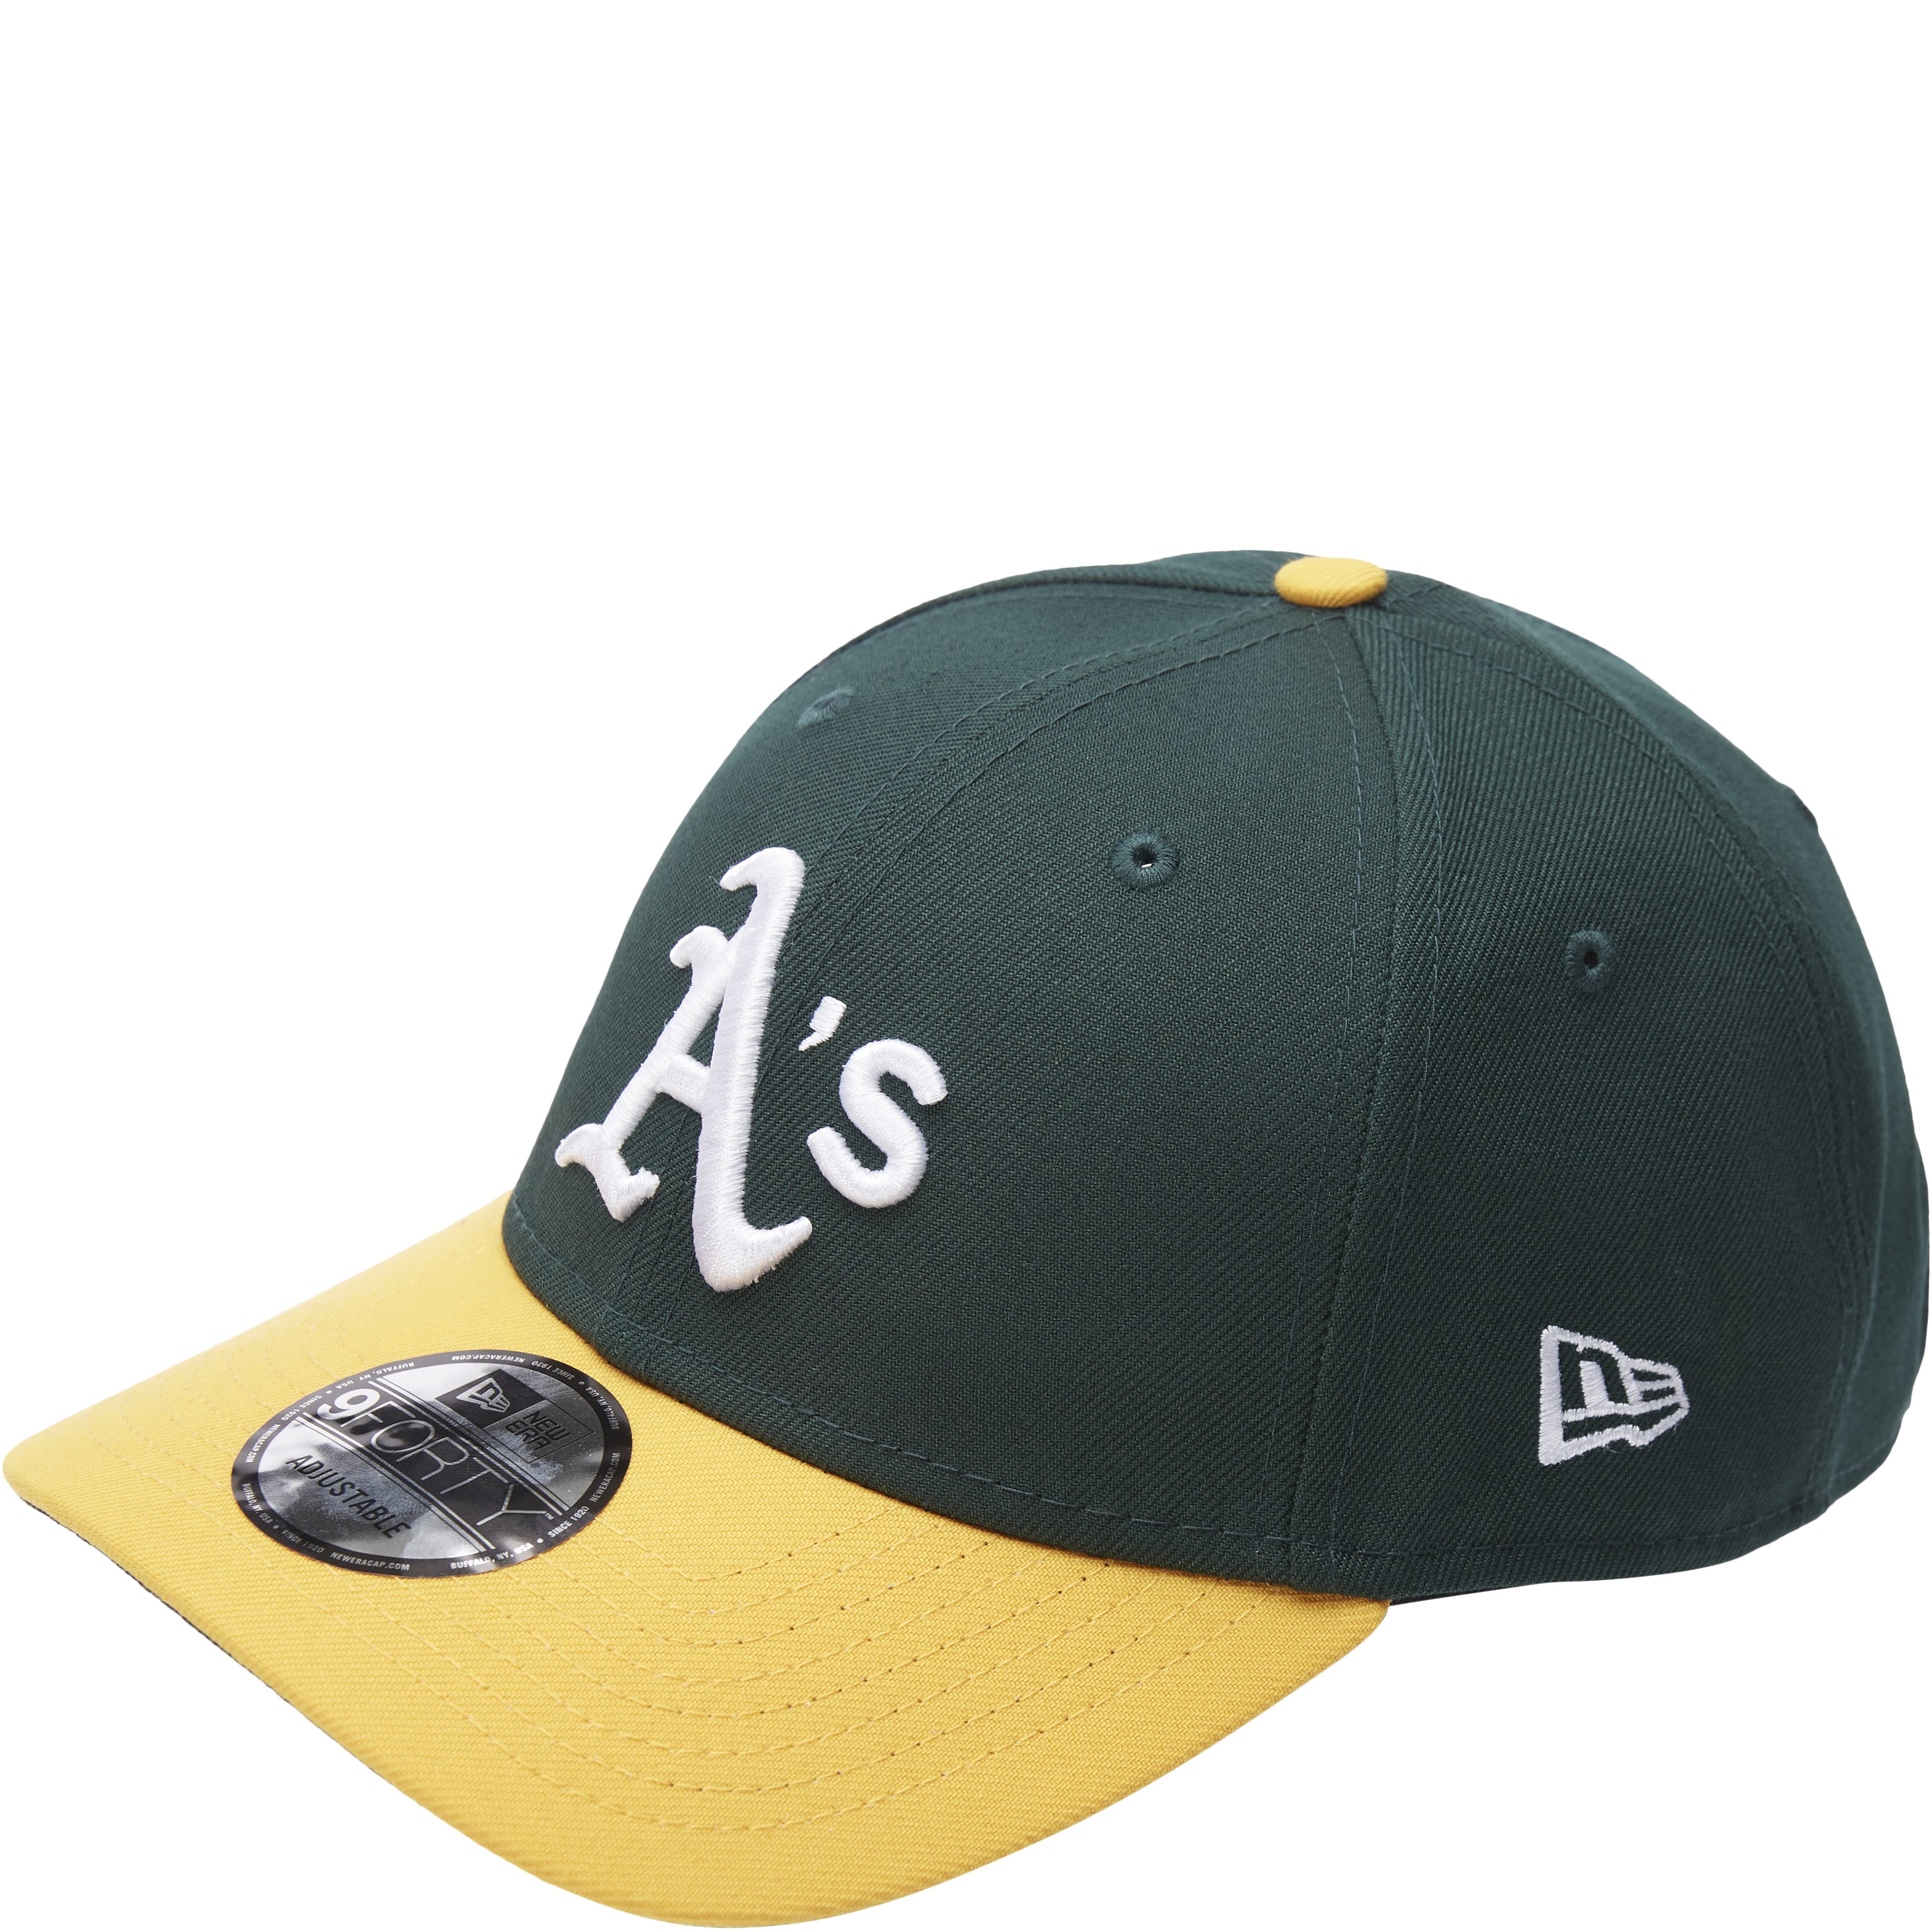 Oakland Cap - Caps - Green